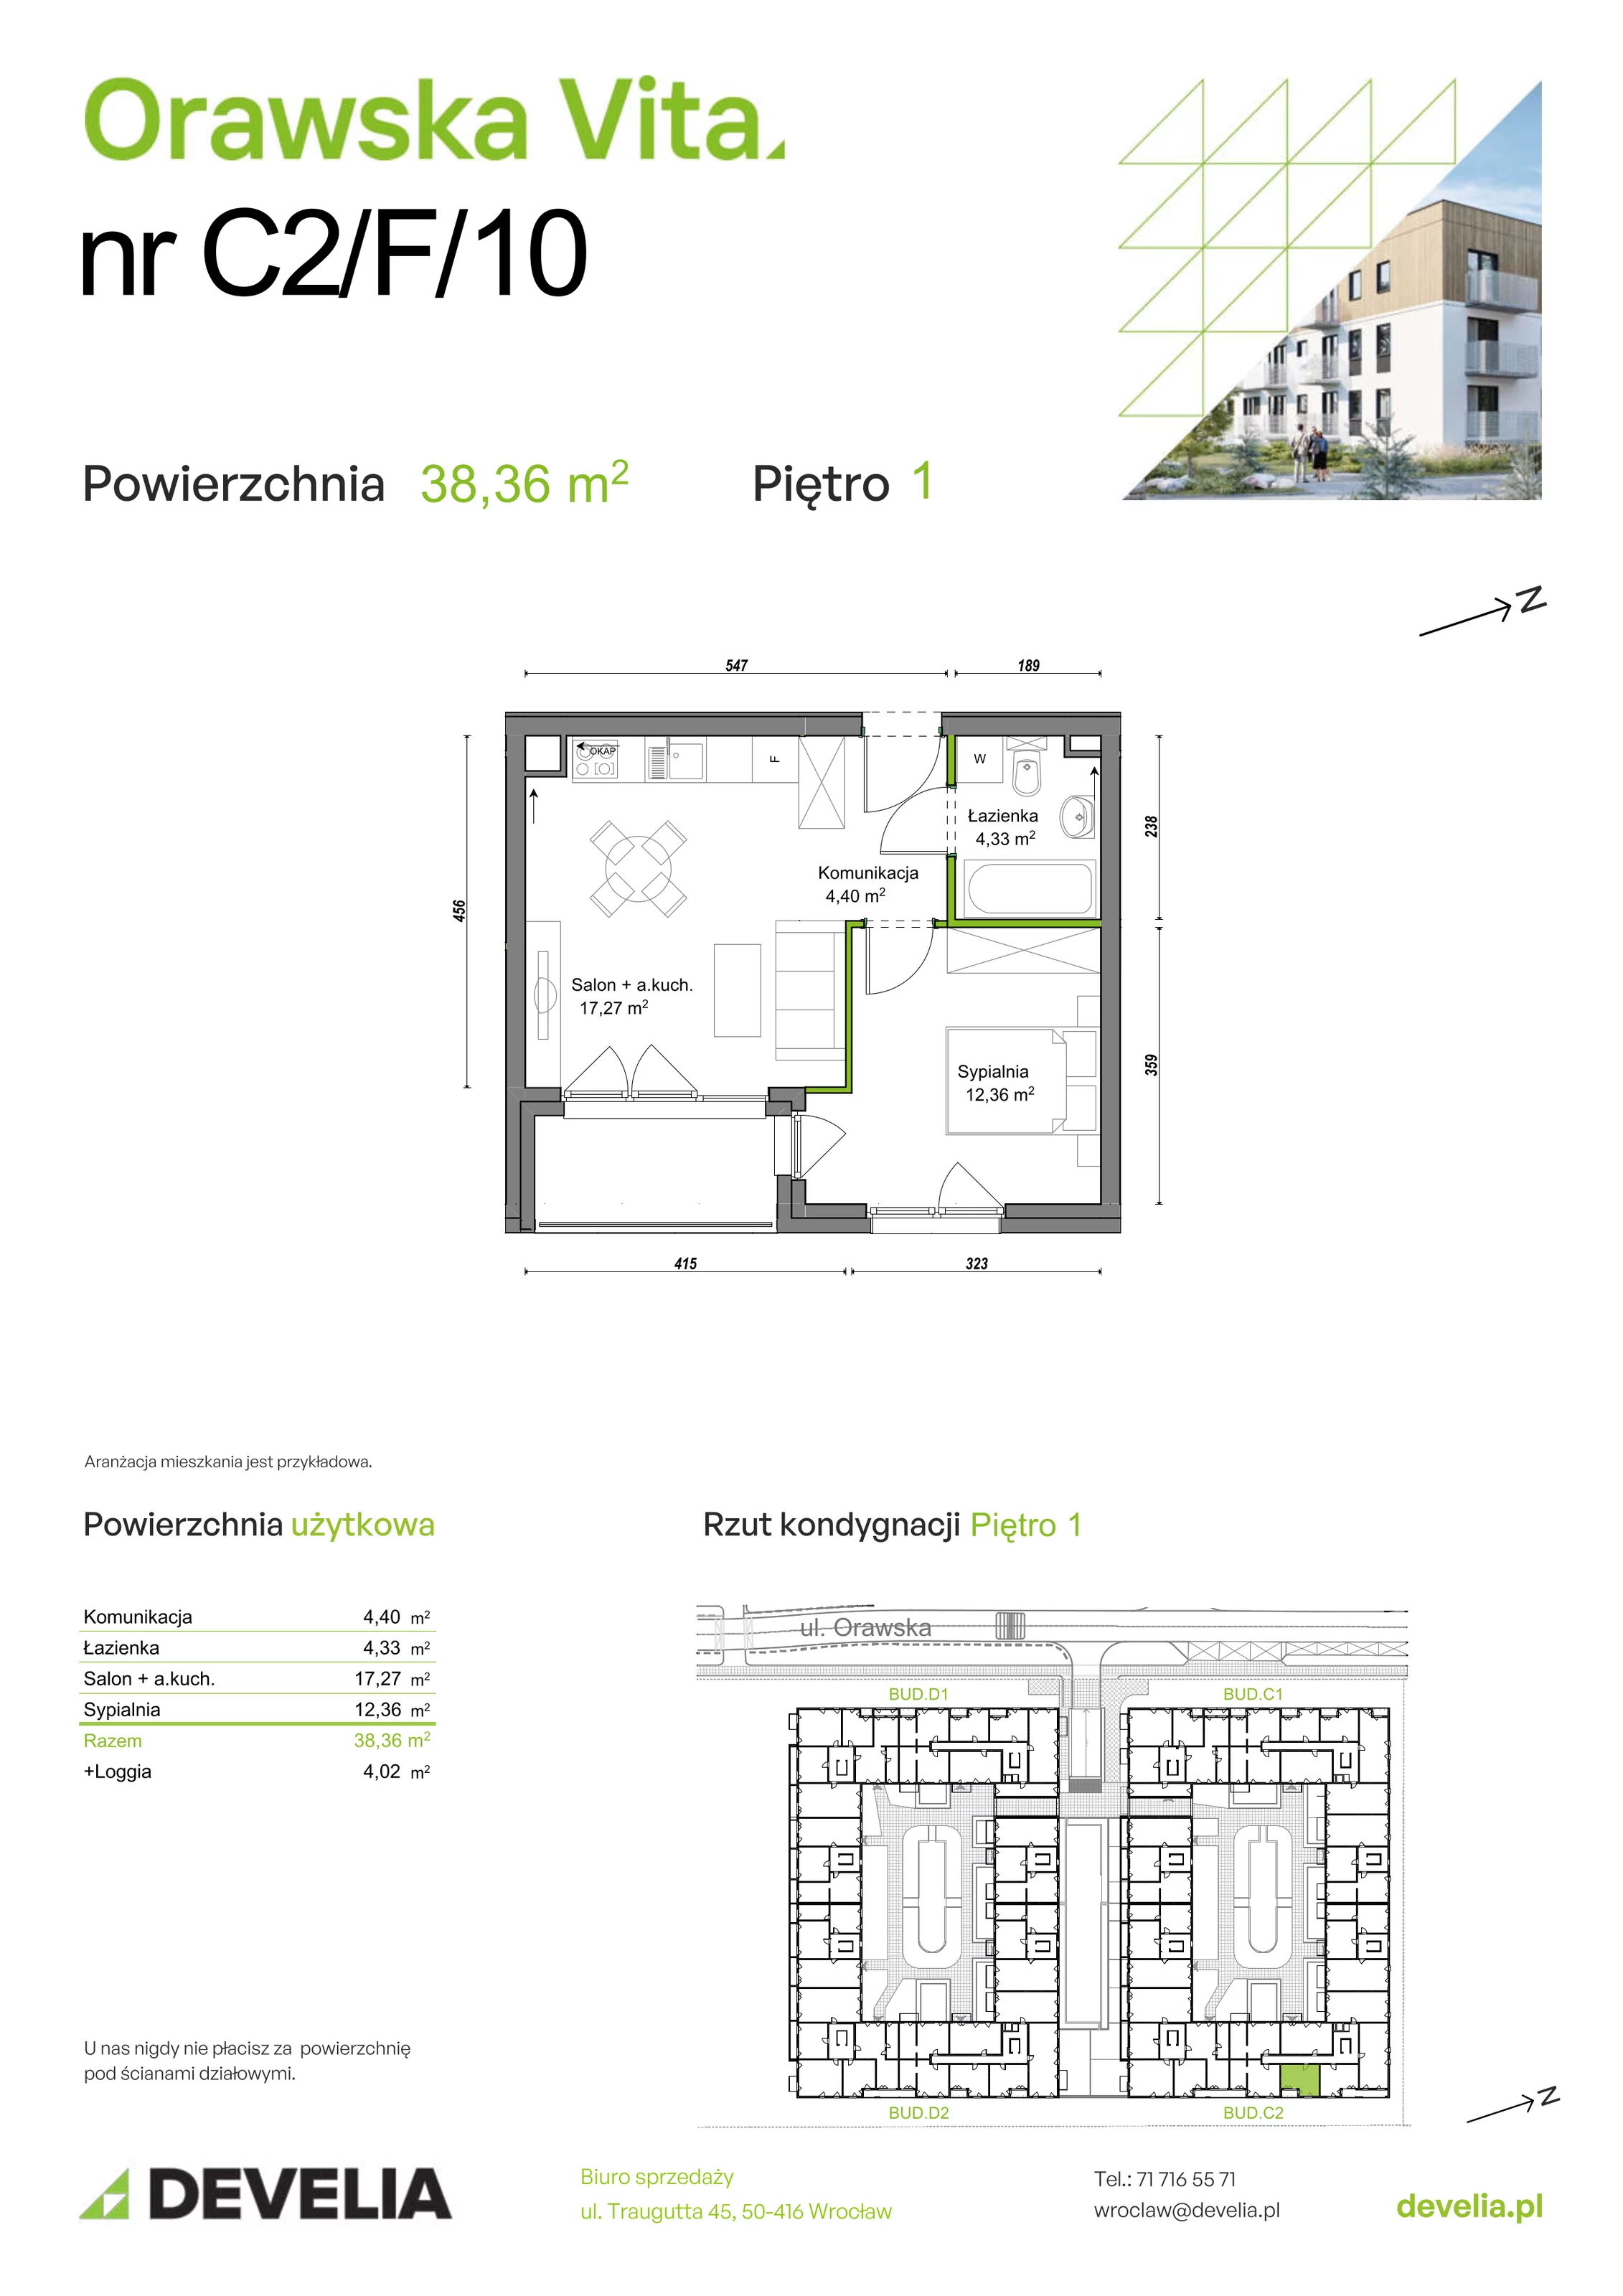 Mieszkanie 38,36 m², piętro 1, oferta nr C2/F/10, Orawska Vita, Wrocław, Ołtaszyn, Krzyki, ul. Orawska 73